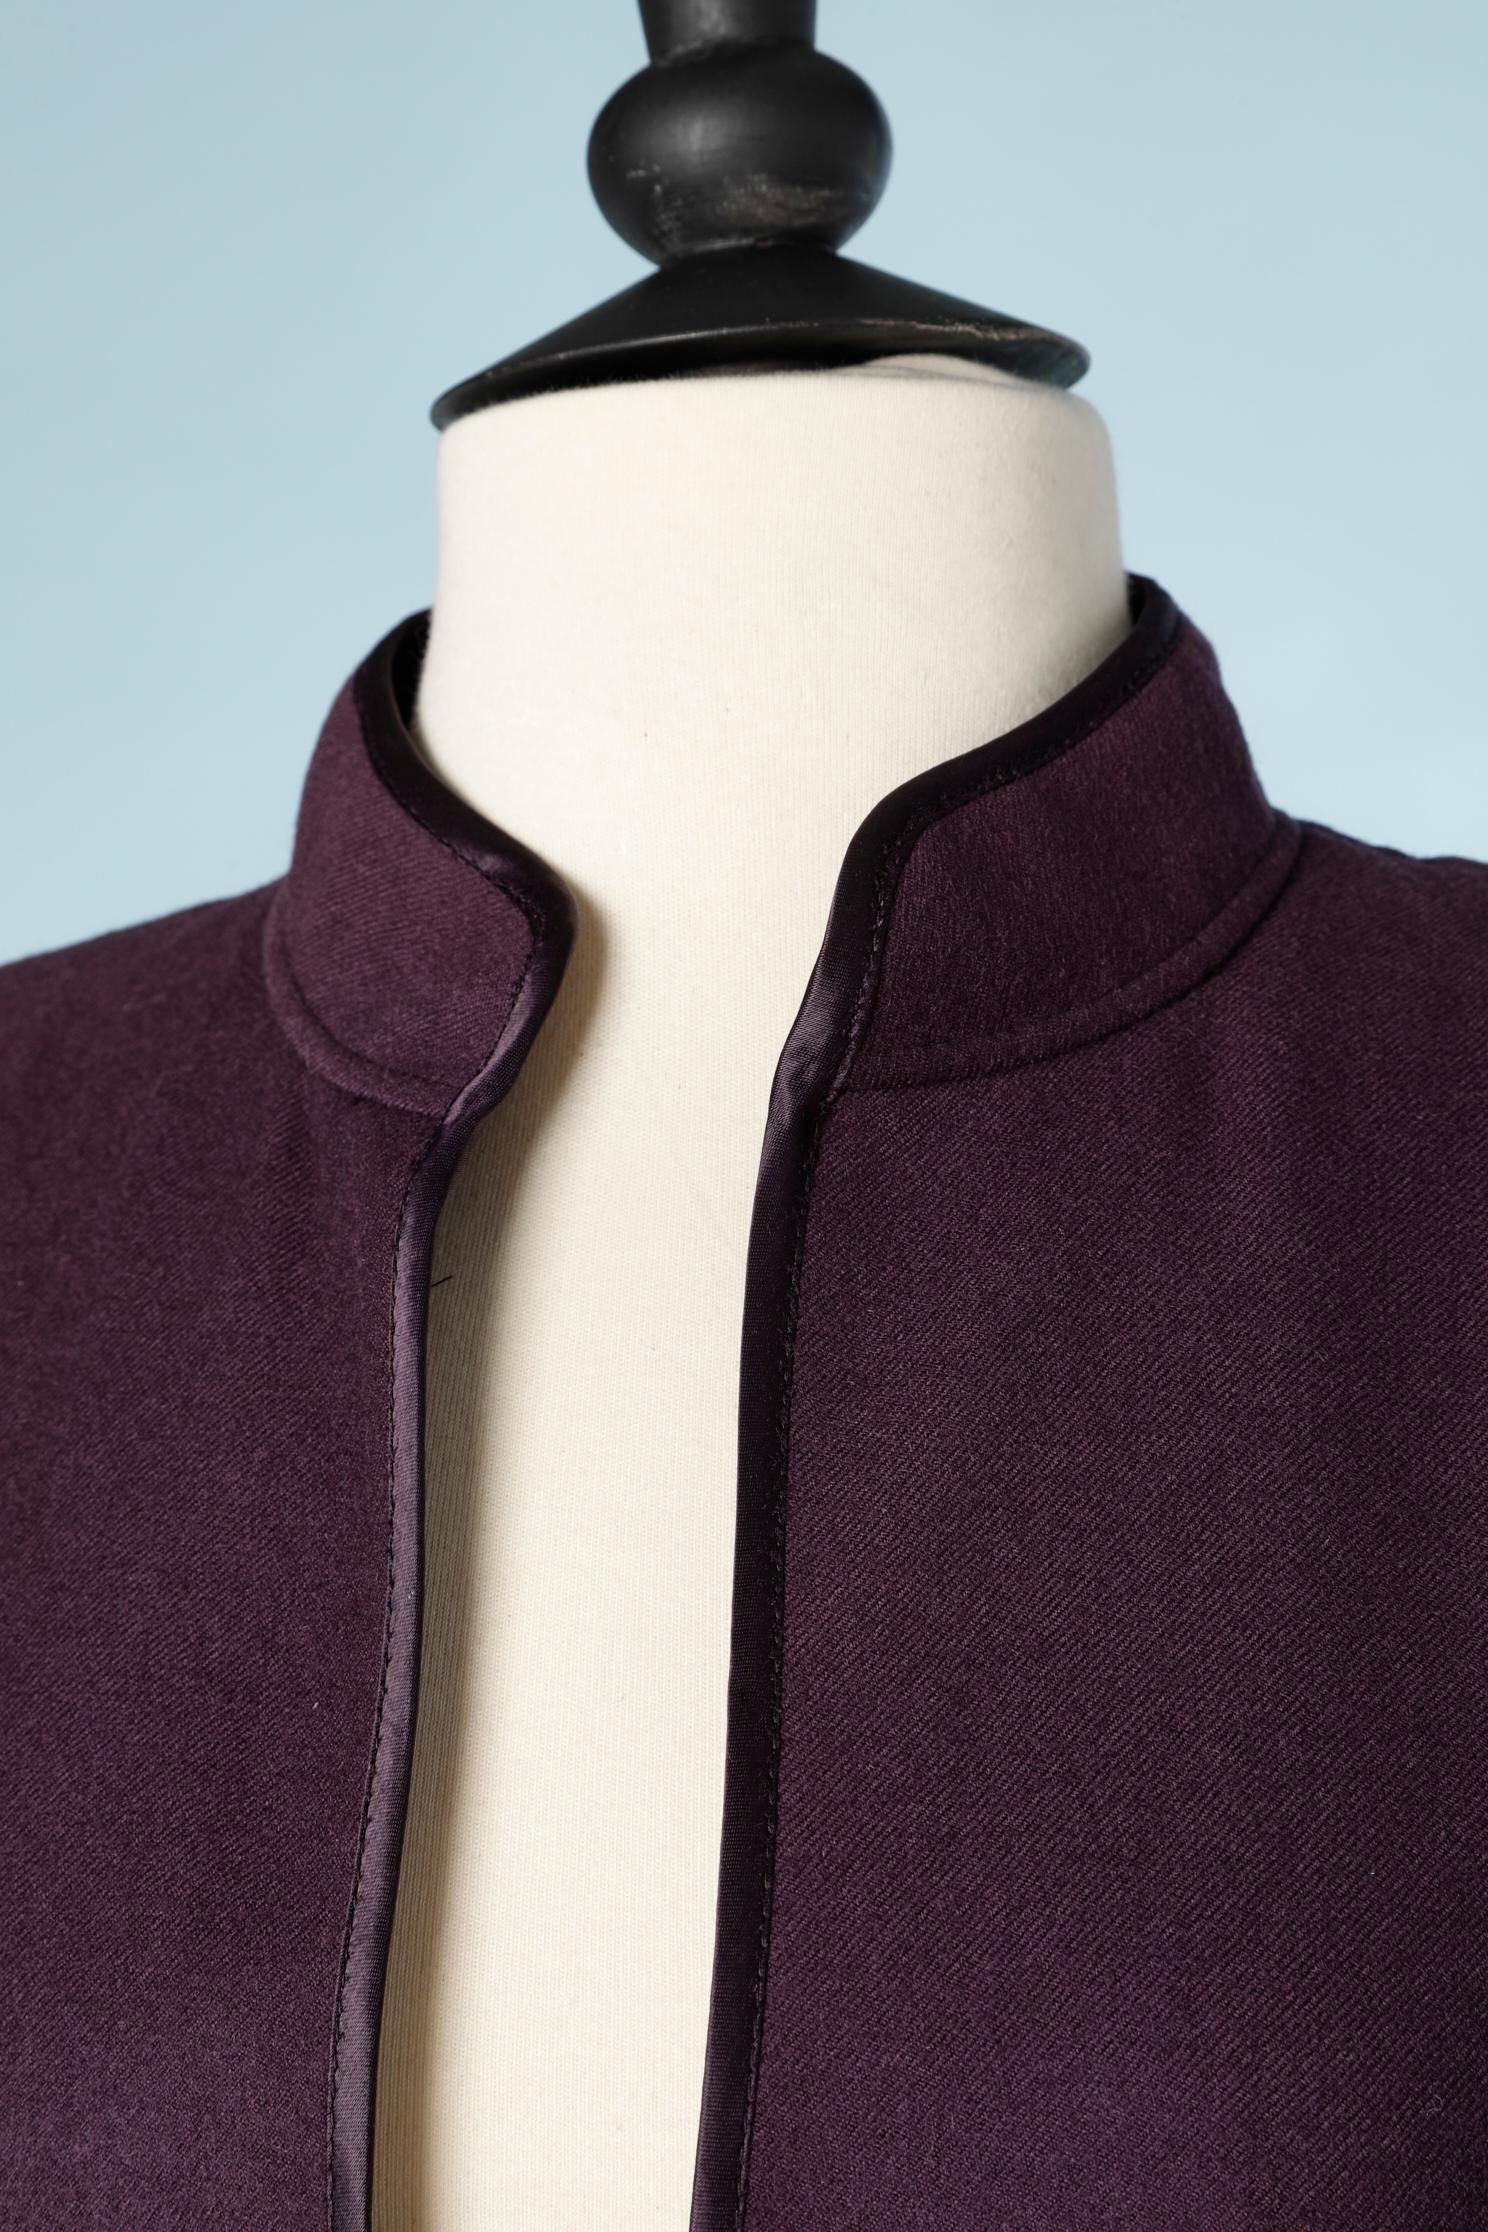 Combinaison jupe en laine violette . Pas d'étiquette de composition du tissu mais la doublure est probablement en acétate ou en rayonne. La doublure est marquée.
Mince pad d'épaule. Passepoil à l'intérieur de la veste. 
TAILLE M 